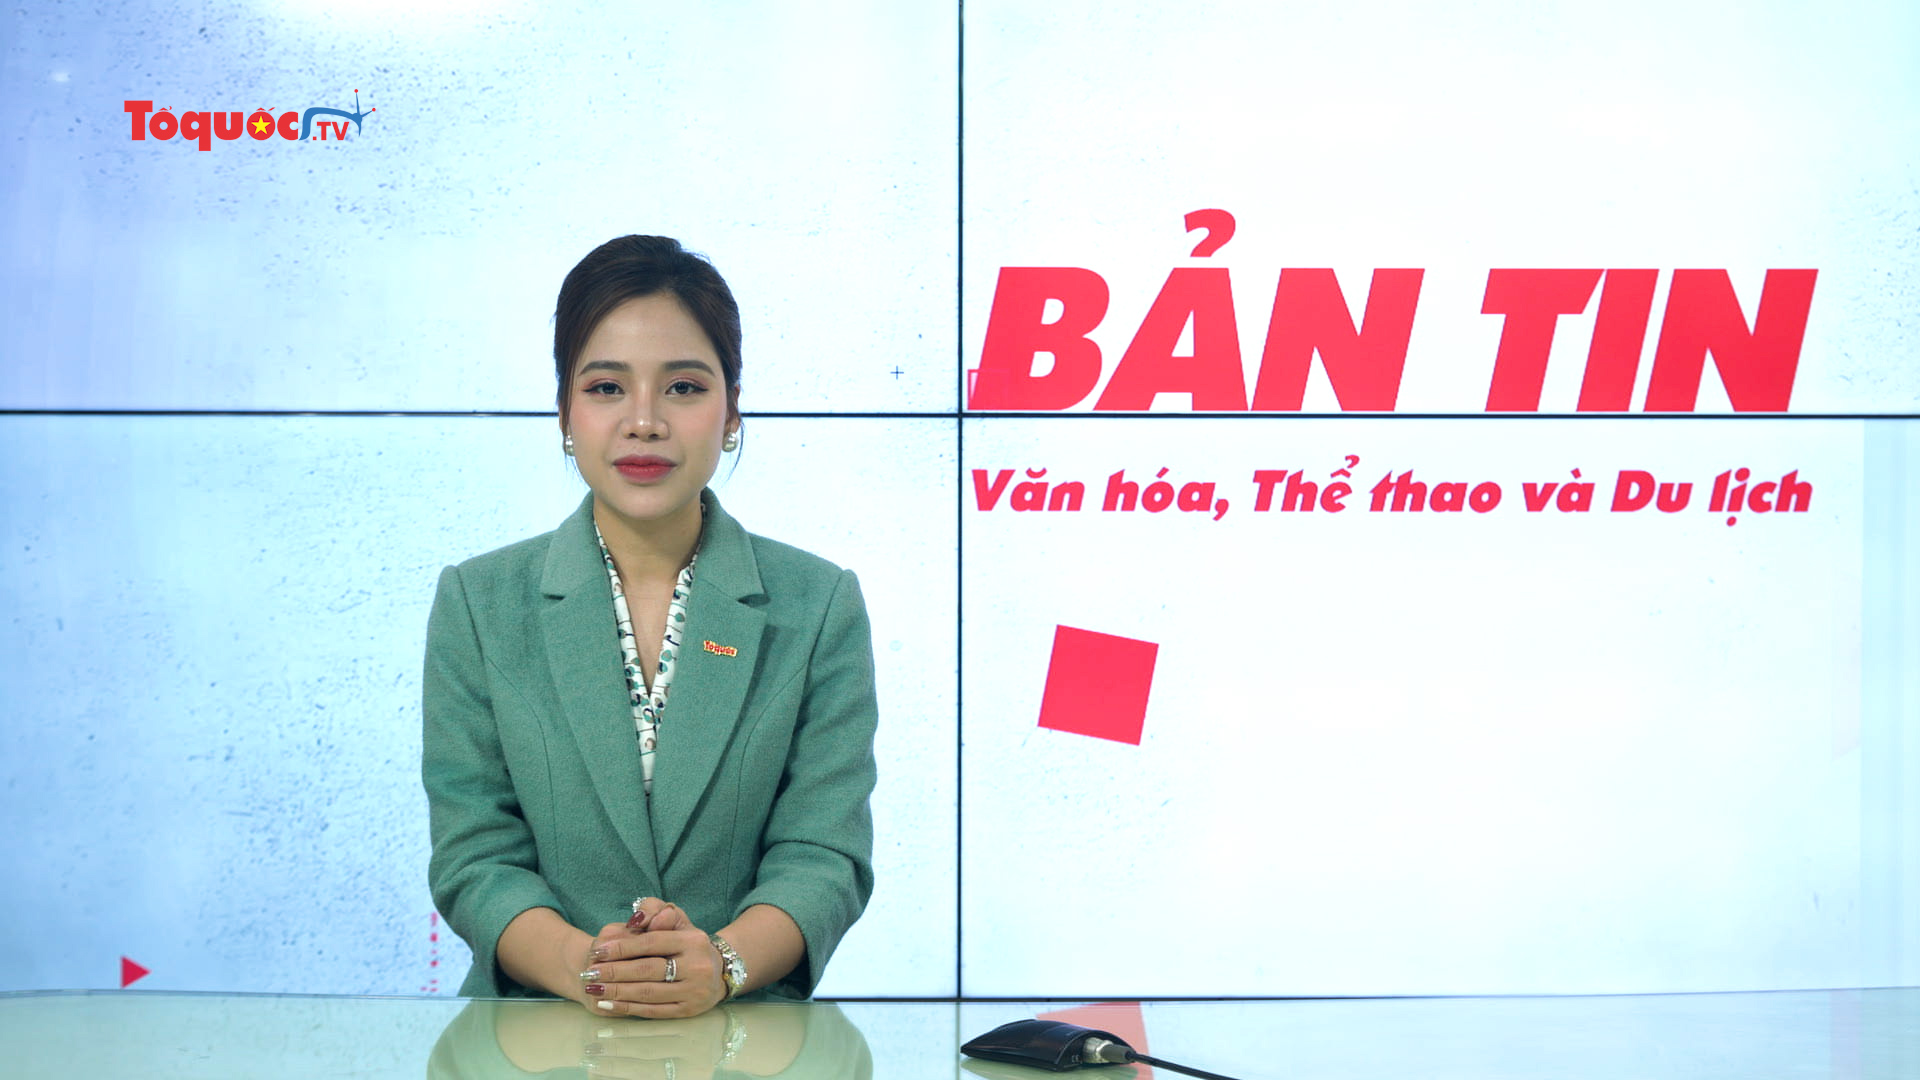 Bản tin truyền hình số 271: Tuổi trẻ ngành VHTTDL với công cuộc chấn hưng và phát triển văn hóa Việt Nam